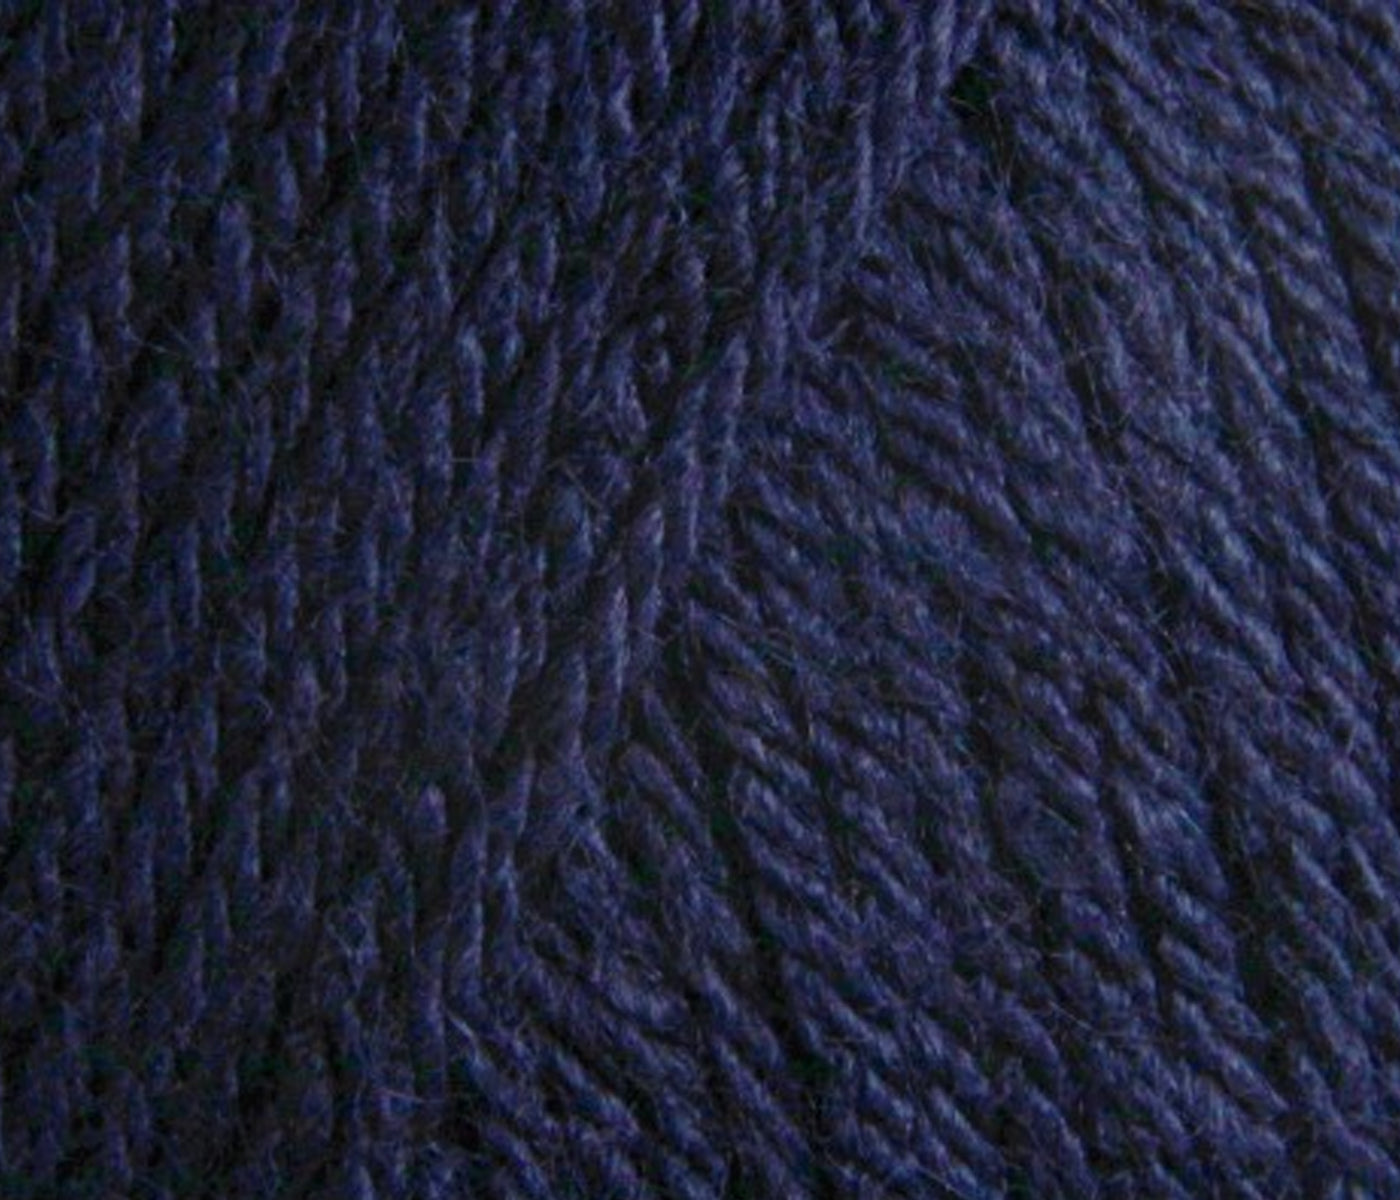 Scandi Baubles | Knitting Kit